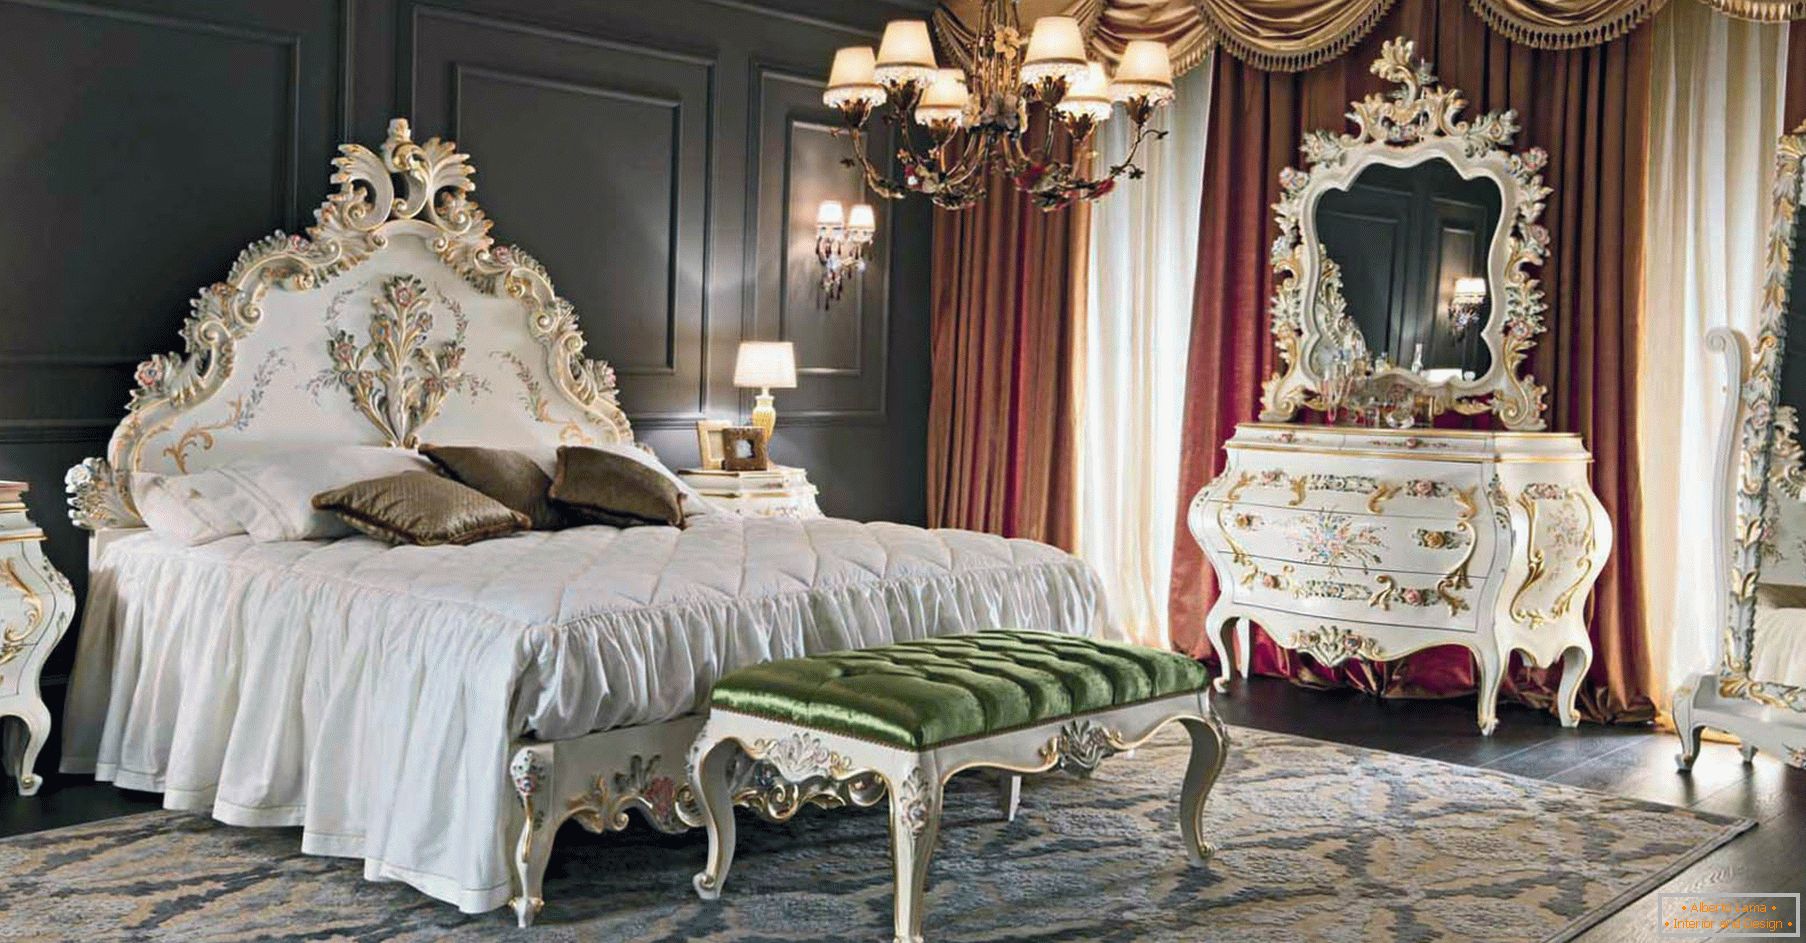 Para decorar o quarto, foi utilizado um contraste de marrom escuro, dourado, vermelho e branco. O mobiliário é selecionado de acordo com o estilo do barroco.